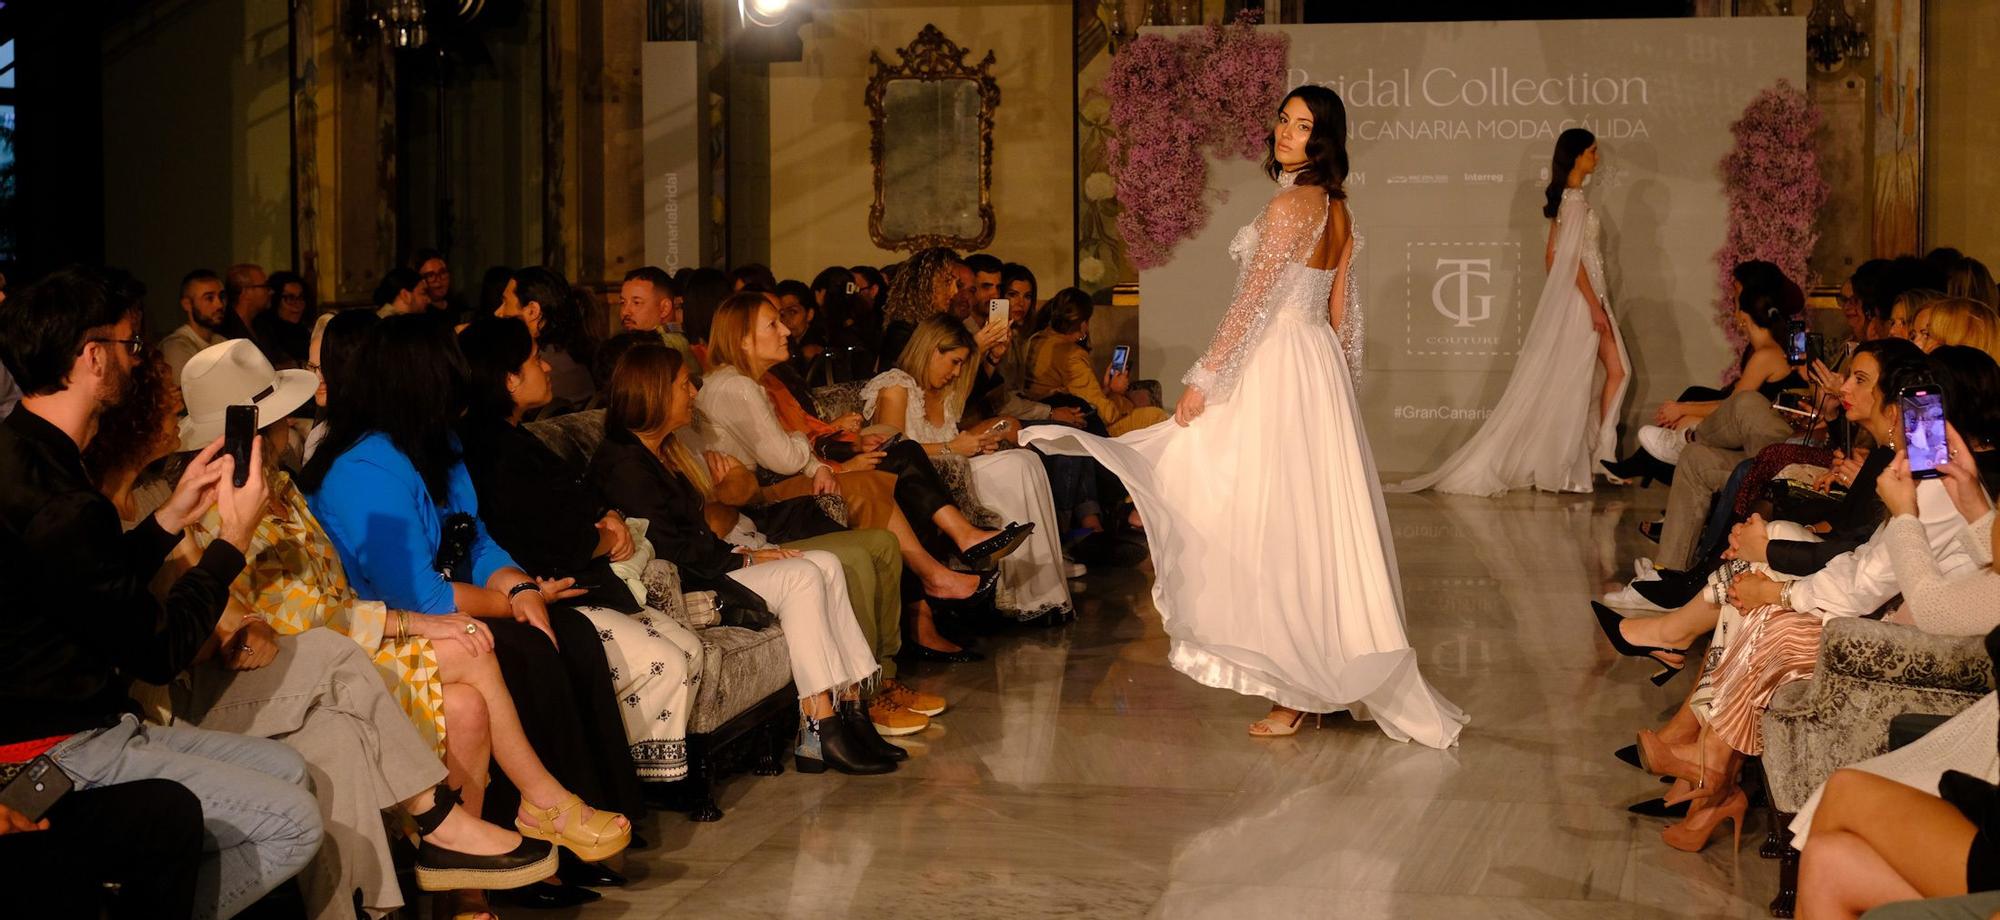 Segunda jornada de Bridal Collection Gran Canaria Moda Cálida